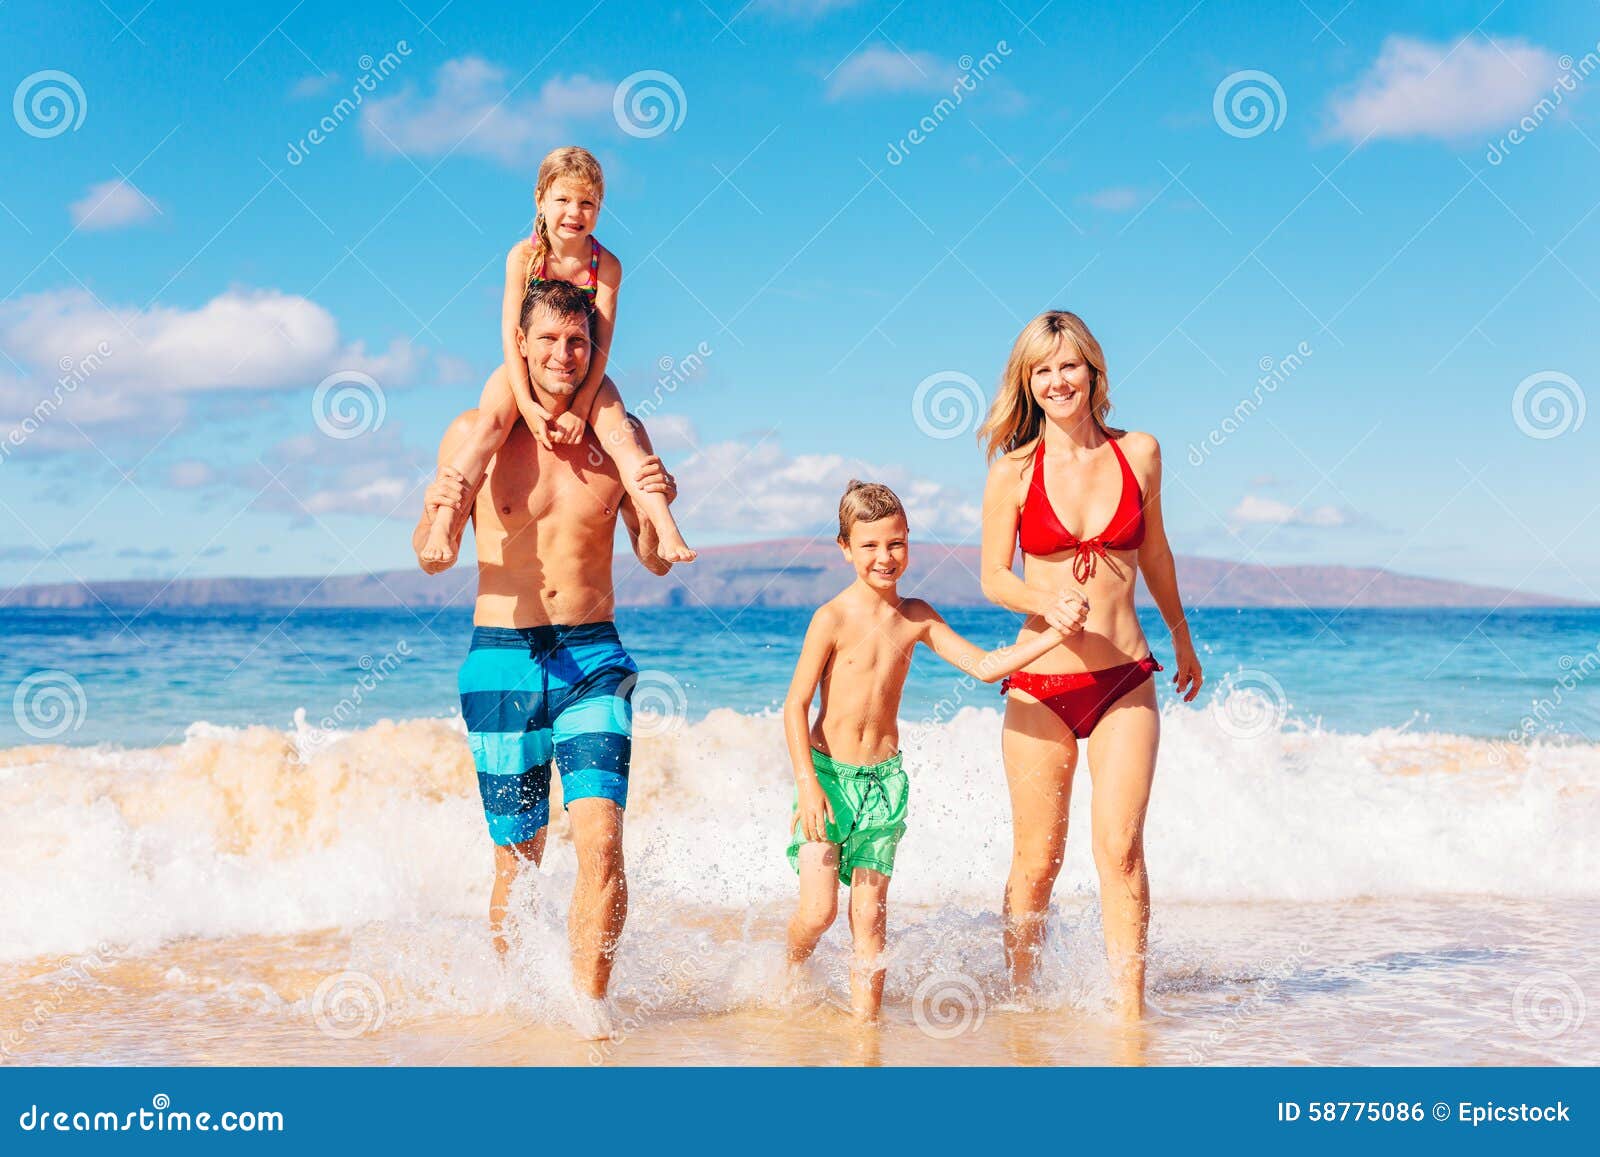 Gelukkige familie die pret op het strand heeft. De vakantie van de familie Gelukkige familie die pret op mooi warm zonnig strand hebben Openlucht de zomerlevensstijl